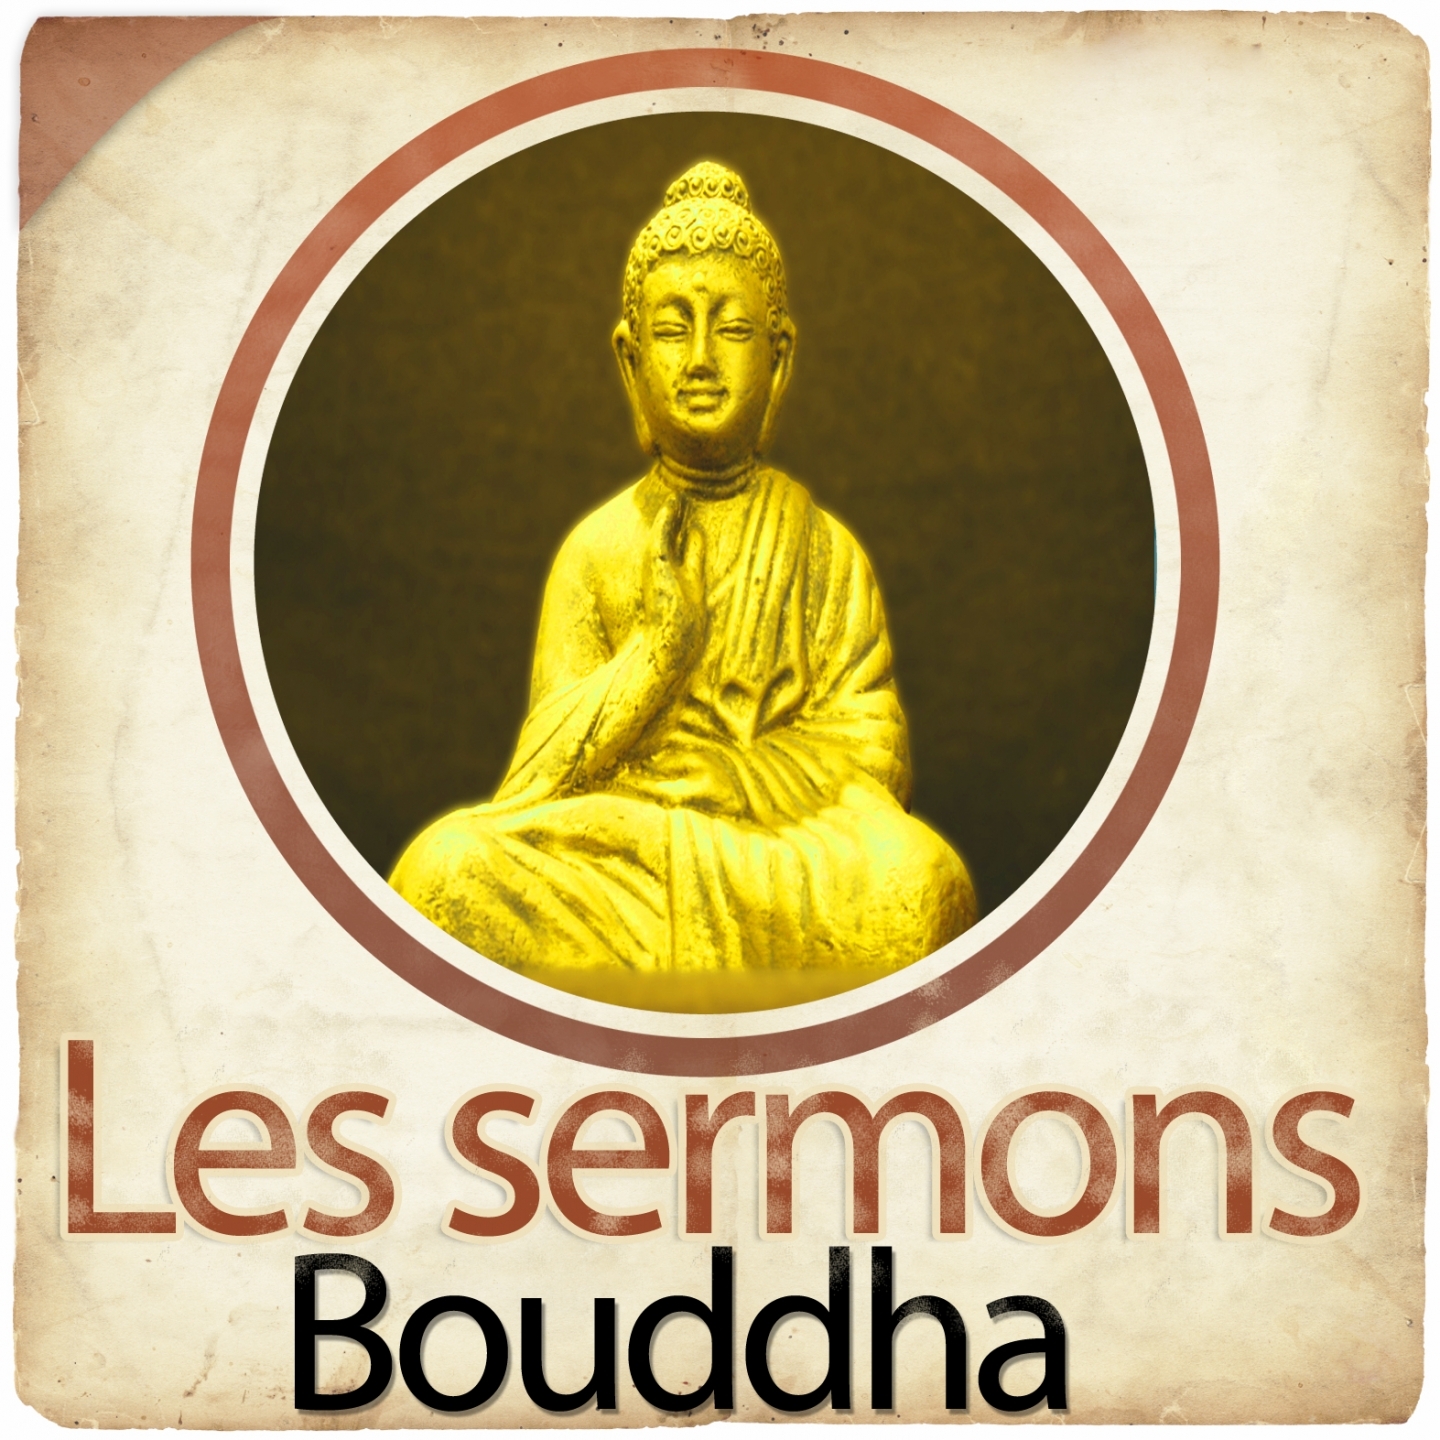 Les sermons de Bouddha, chapitre 5